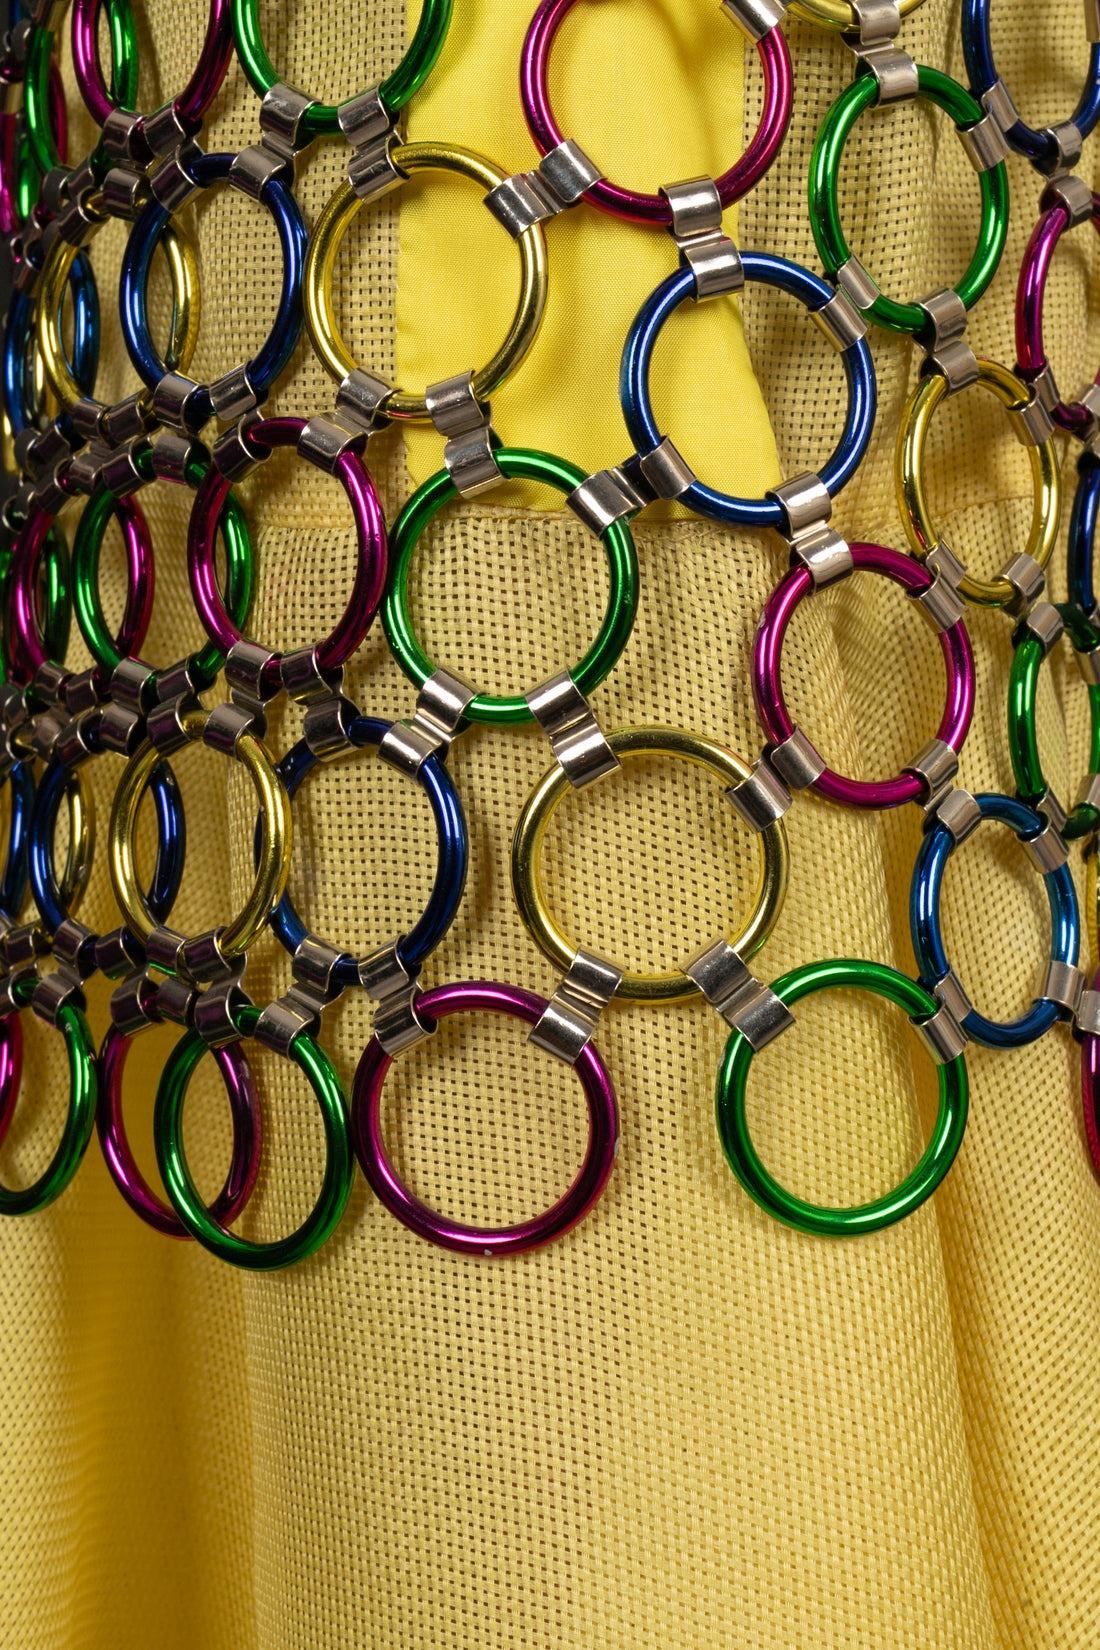 Paco Rabanne - (Fabriqué en France) Robe du soir avec anneaux métalliques multicolores et paille Panama jaune. Pièce des années 1990. Il n'y a pas de Label de taille, il convient à un 38FR.

Informations complémentaires :
Condit : Très bon